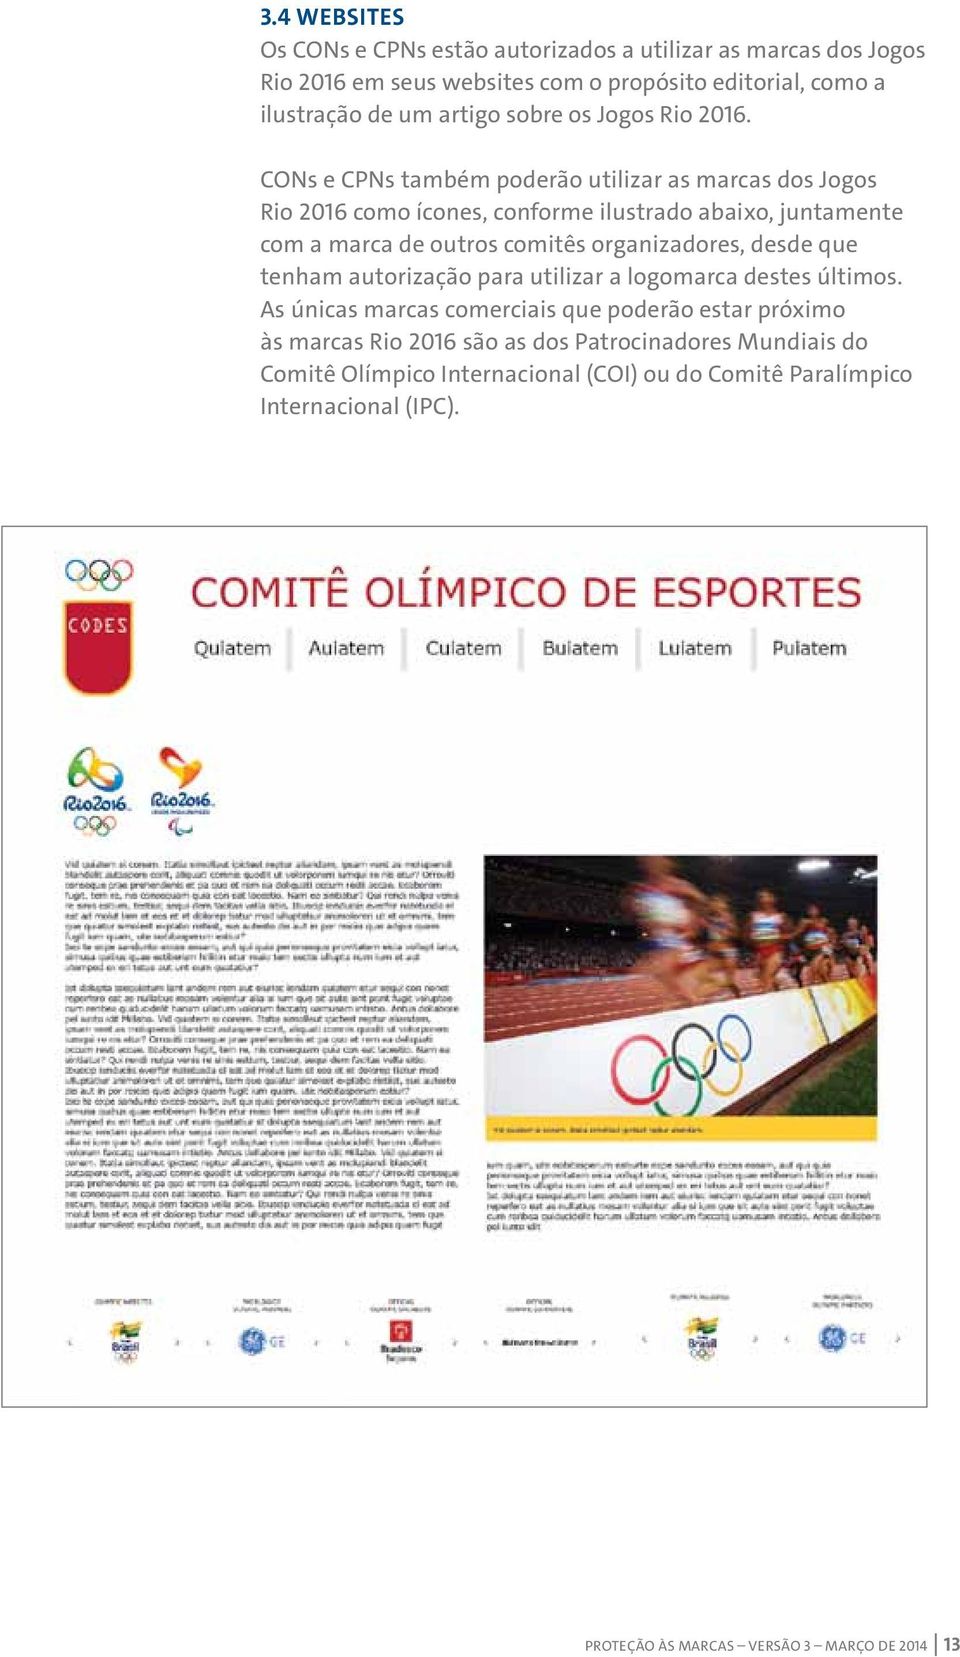 CONs e CPNs também poderão utilizar as marcas dos Jogos Rio 2016 como ícones, conforme ilustrado abaixo, juntamente com a marca de outros comitês organizadores,